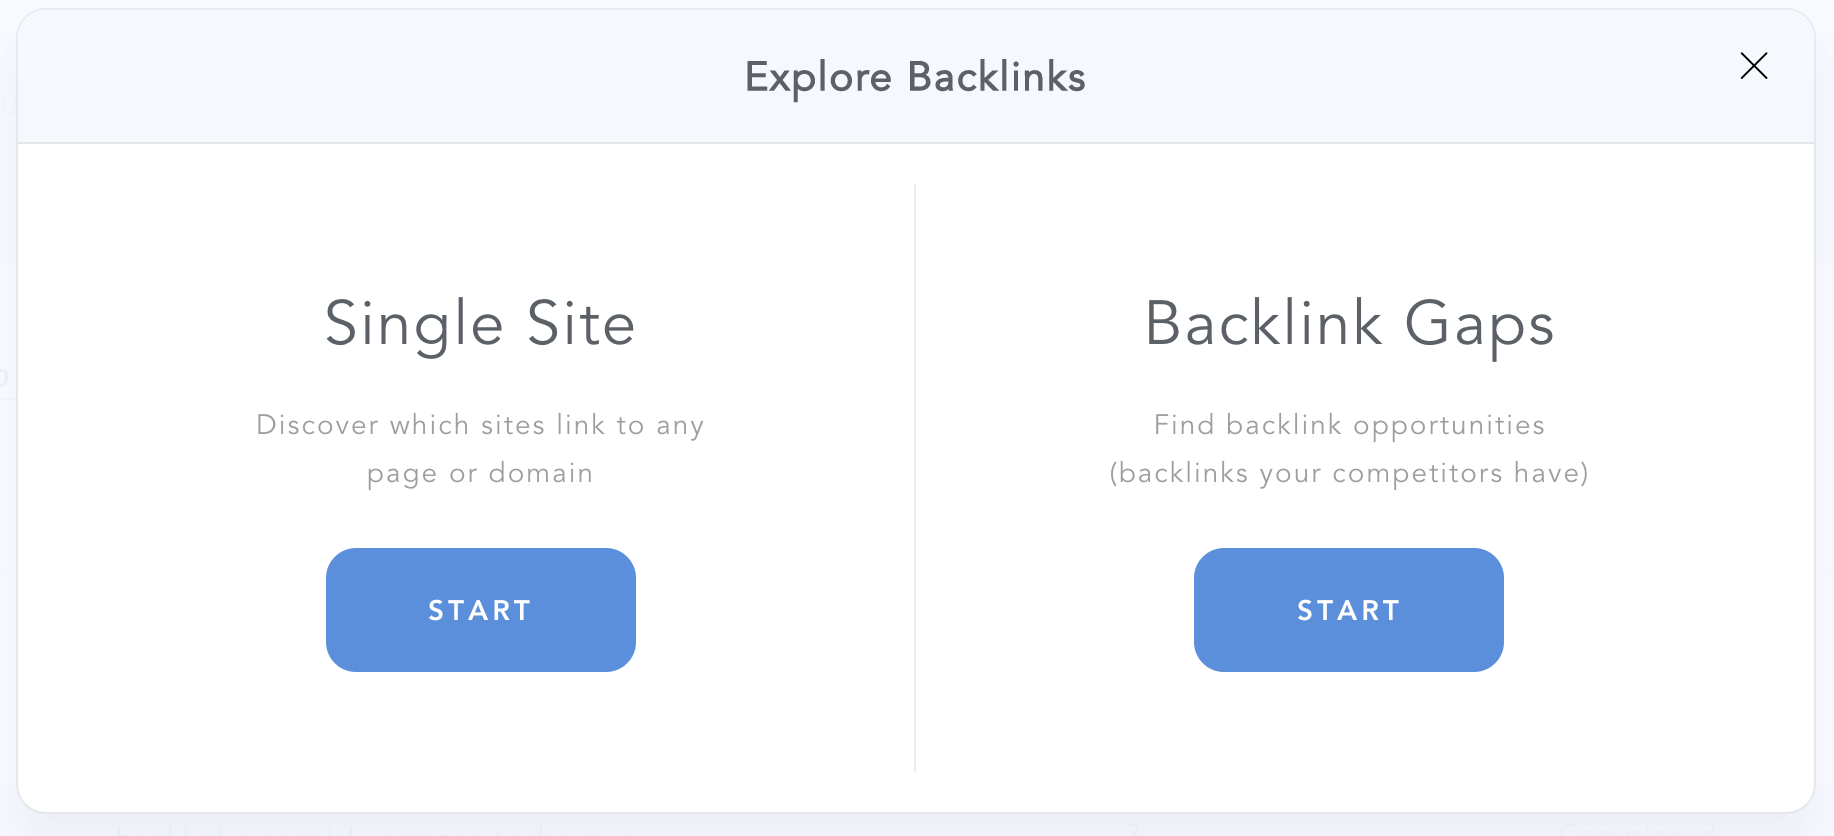 Backlink Gaps 1